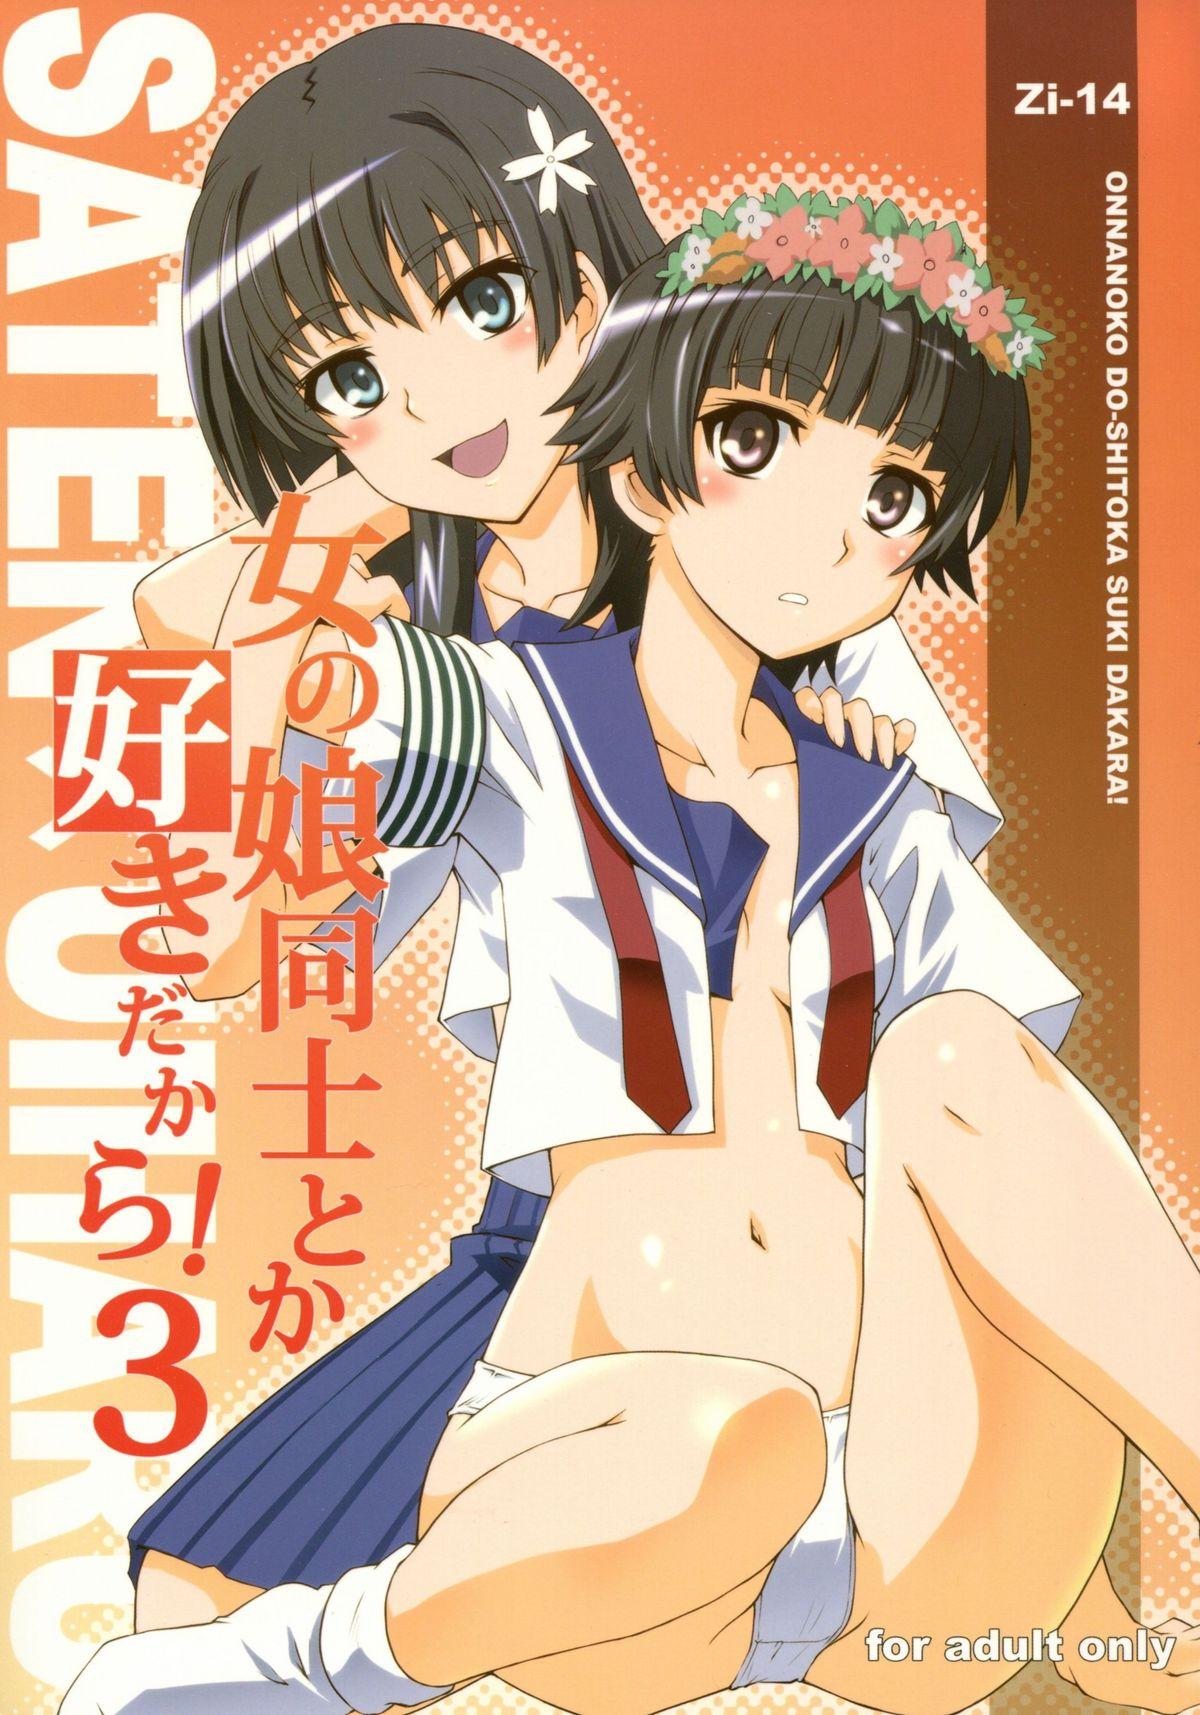 Amateur Sex Onnanoko Doushi toka Suki dakara! 3 - Toaru kagaku no railgun Free Amatuer - Picture 1